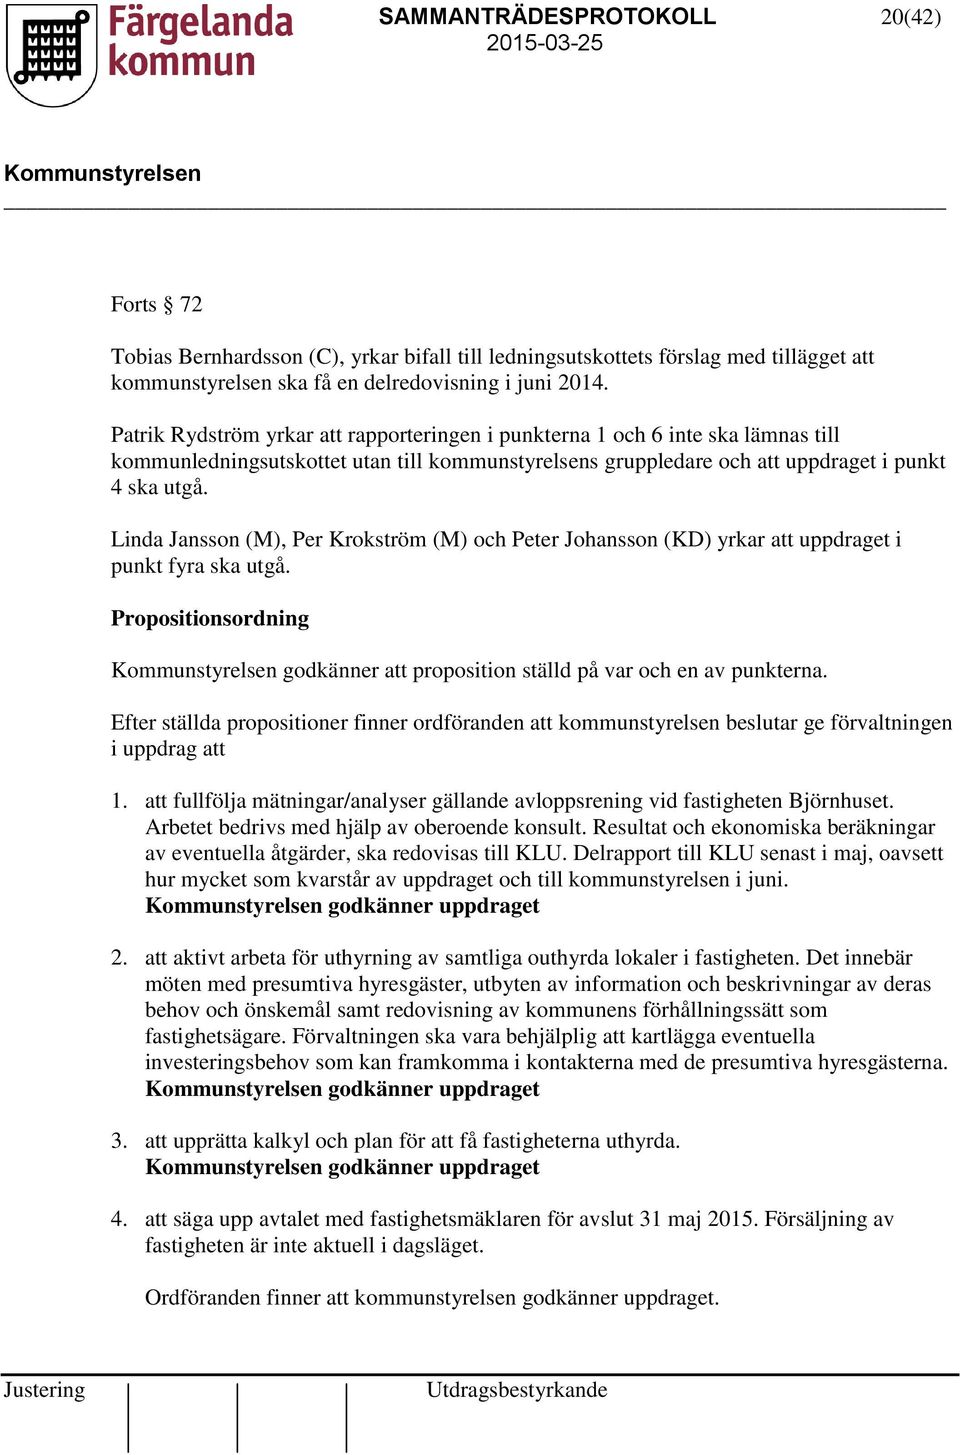 Linda Jansson (M), Per Krokström (M) och Peter Johansson (KD) yrkar att uppdraget i punkt fyra ska utgå. Propositionsordning godkänner att proposition ställd på var och en av punkterna.